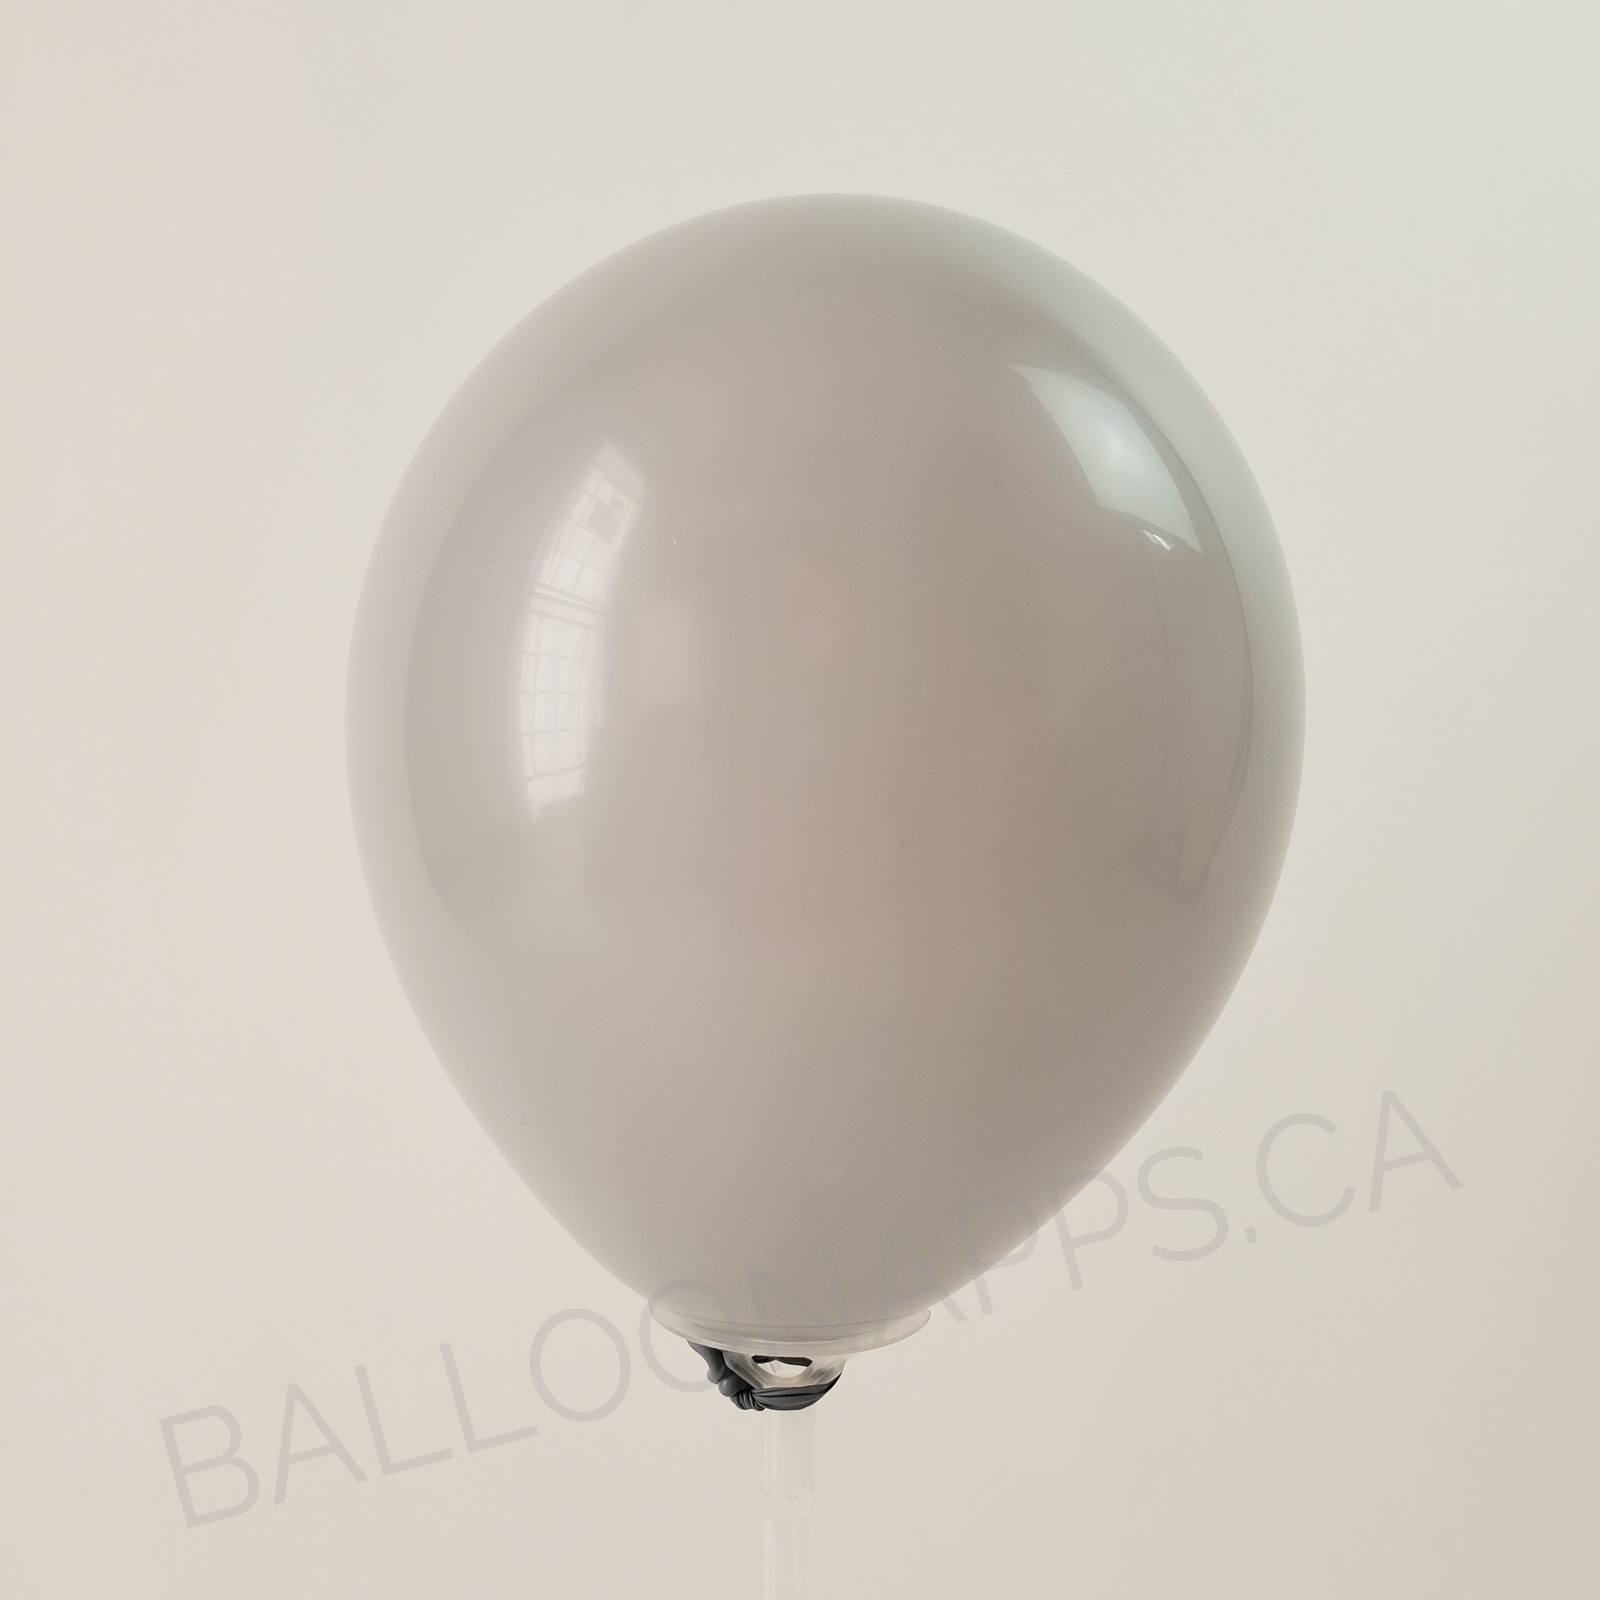 balloon texture Qualatex 160 Fashion Gray